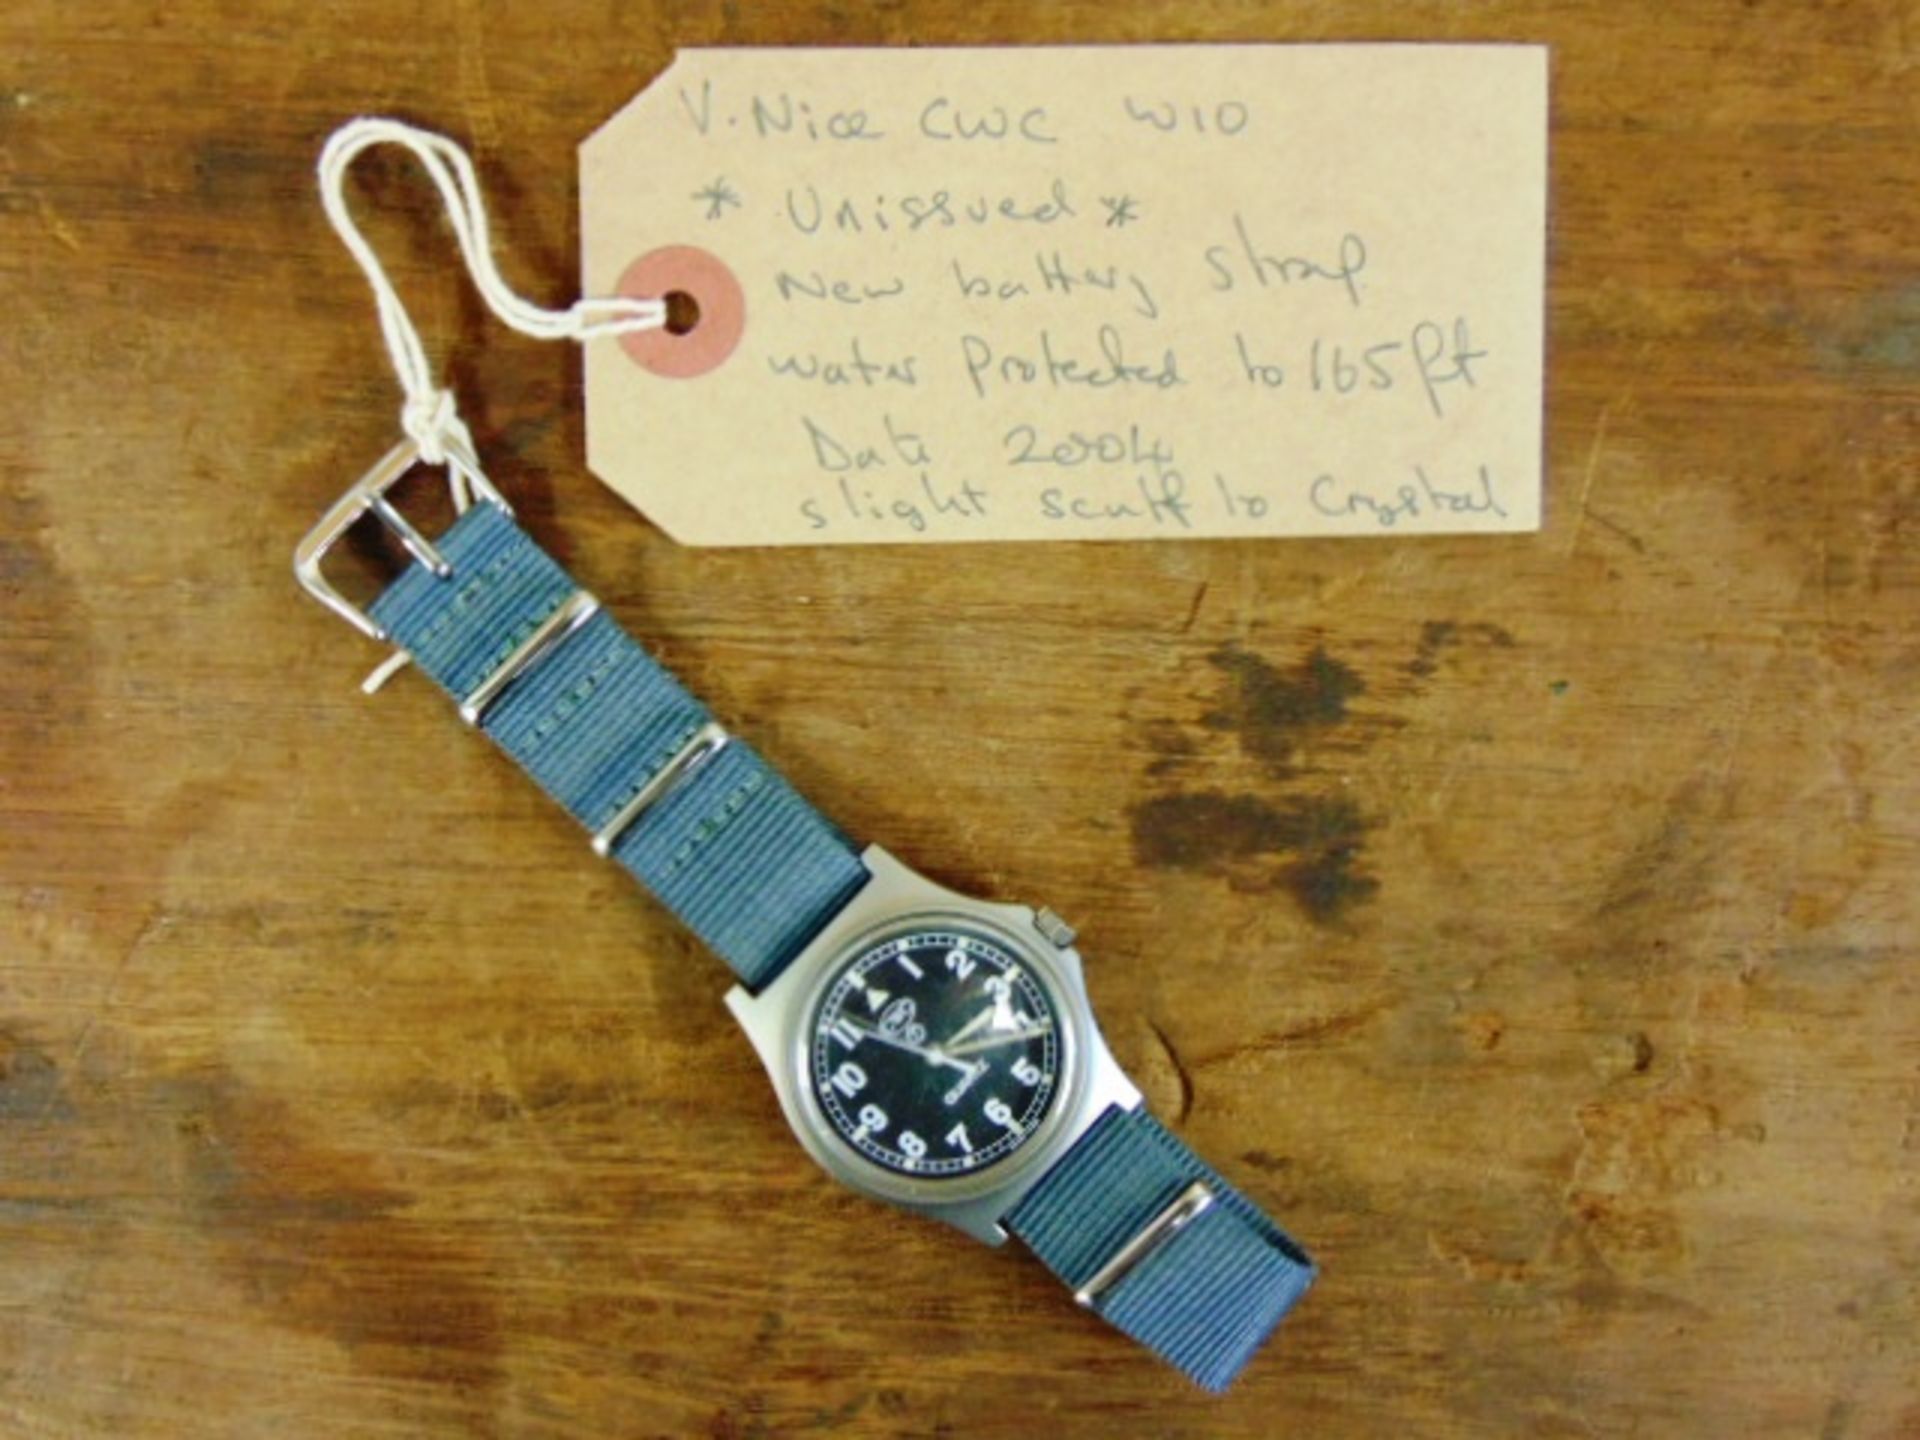 Unissued Genuine British Army, Waterproof CWC quartz wrist watch - Image 2 of 6